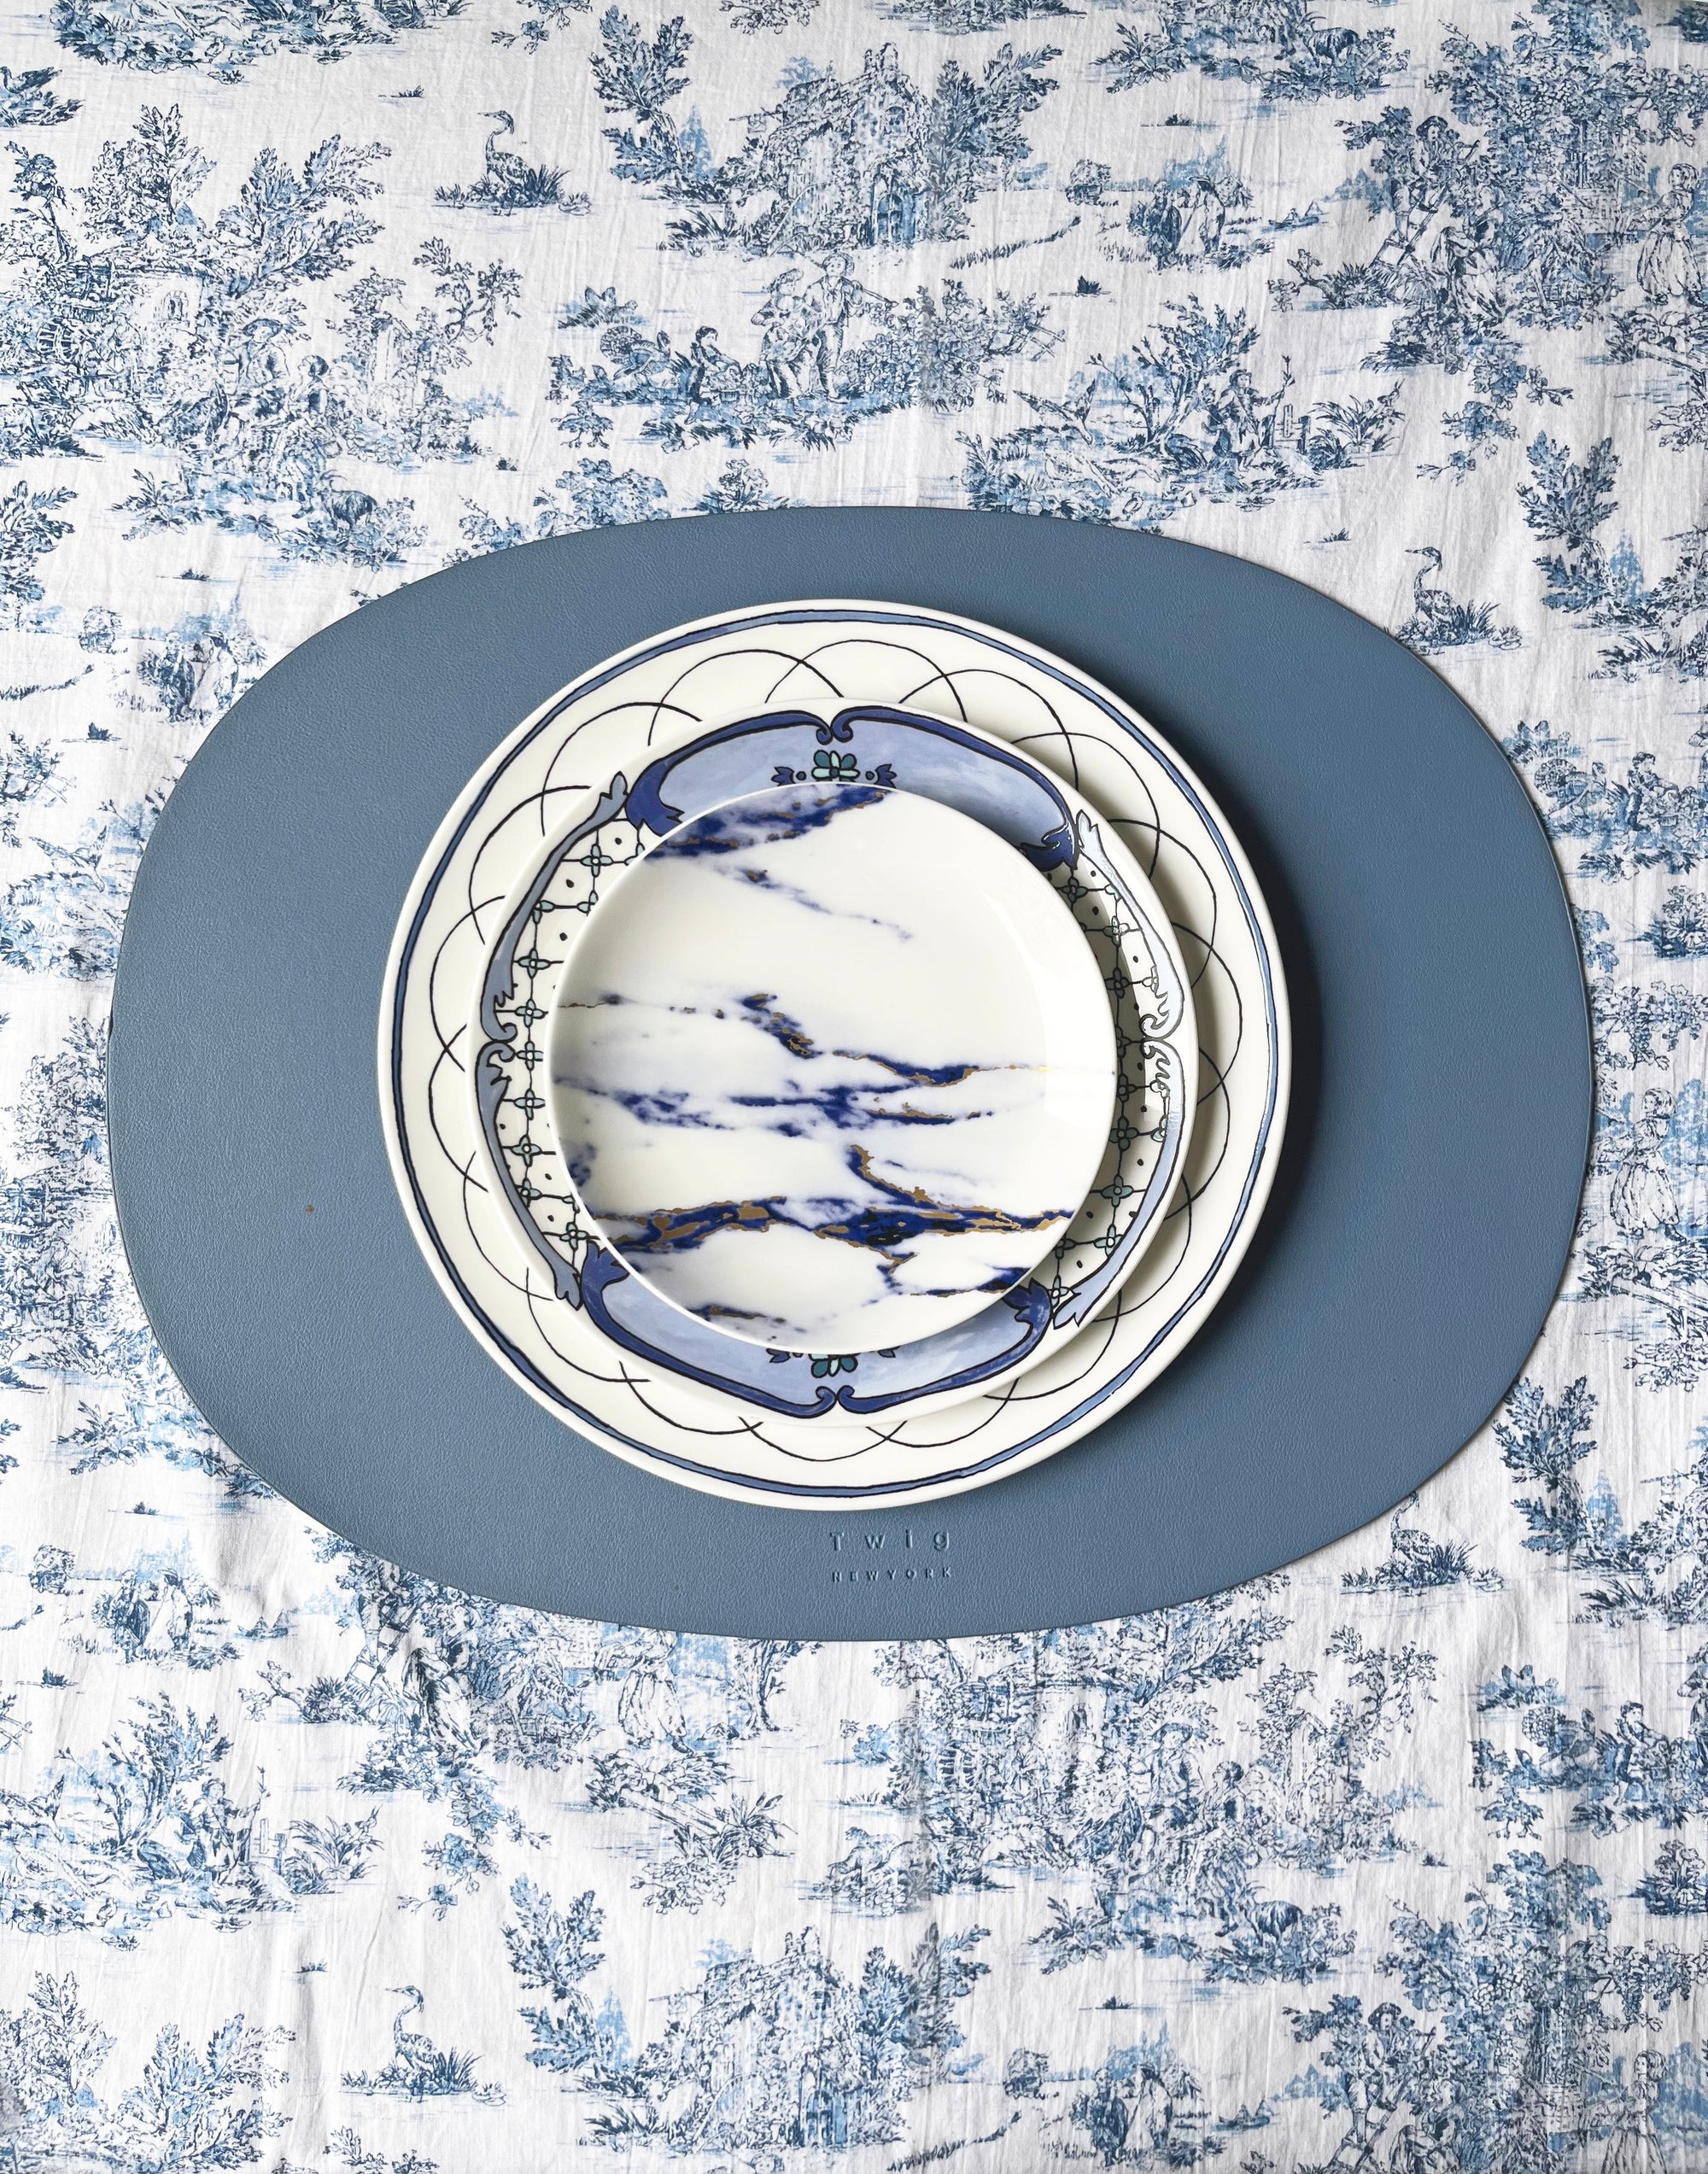 Prouna Marble Azure Set of 4, Canape Plates White Background Photo